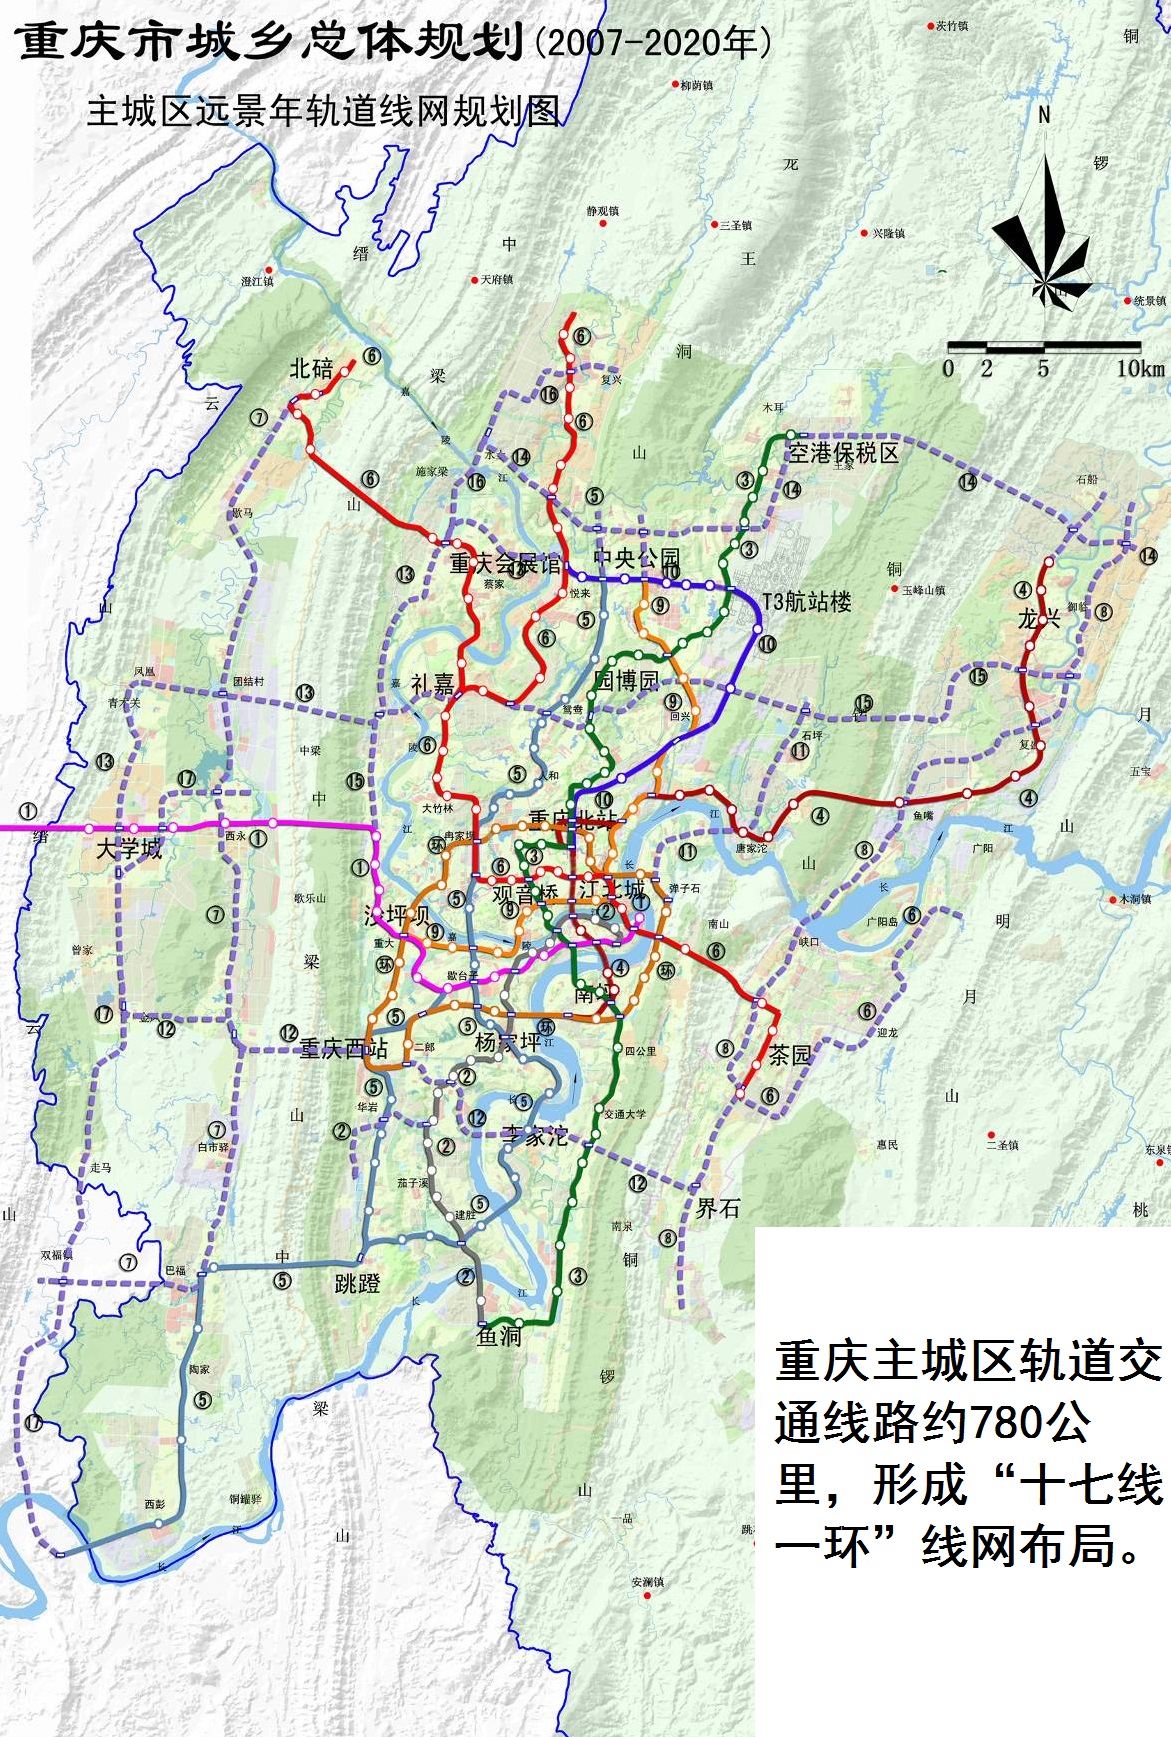 分析重庆轨道交通规划的蓝图:看似困难重重,实则战略布局清晰